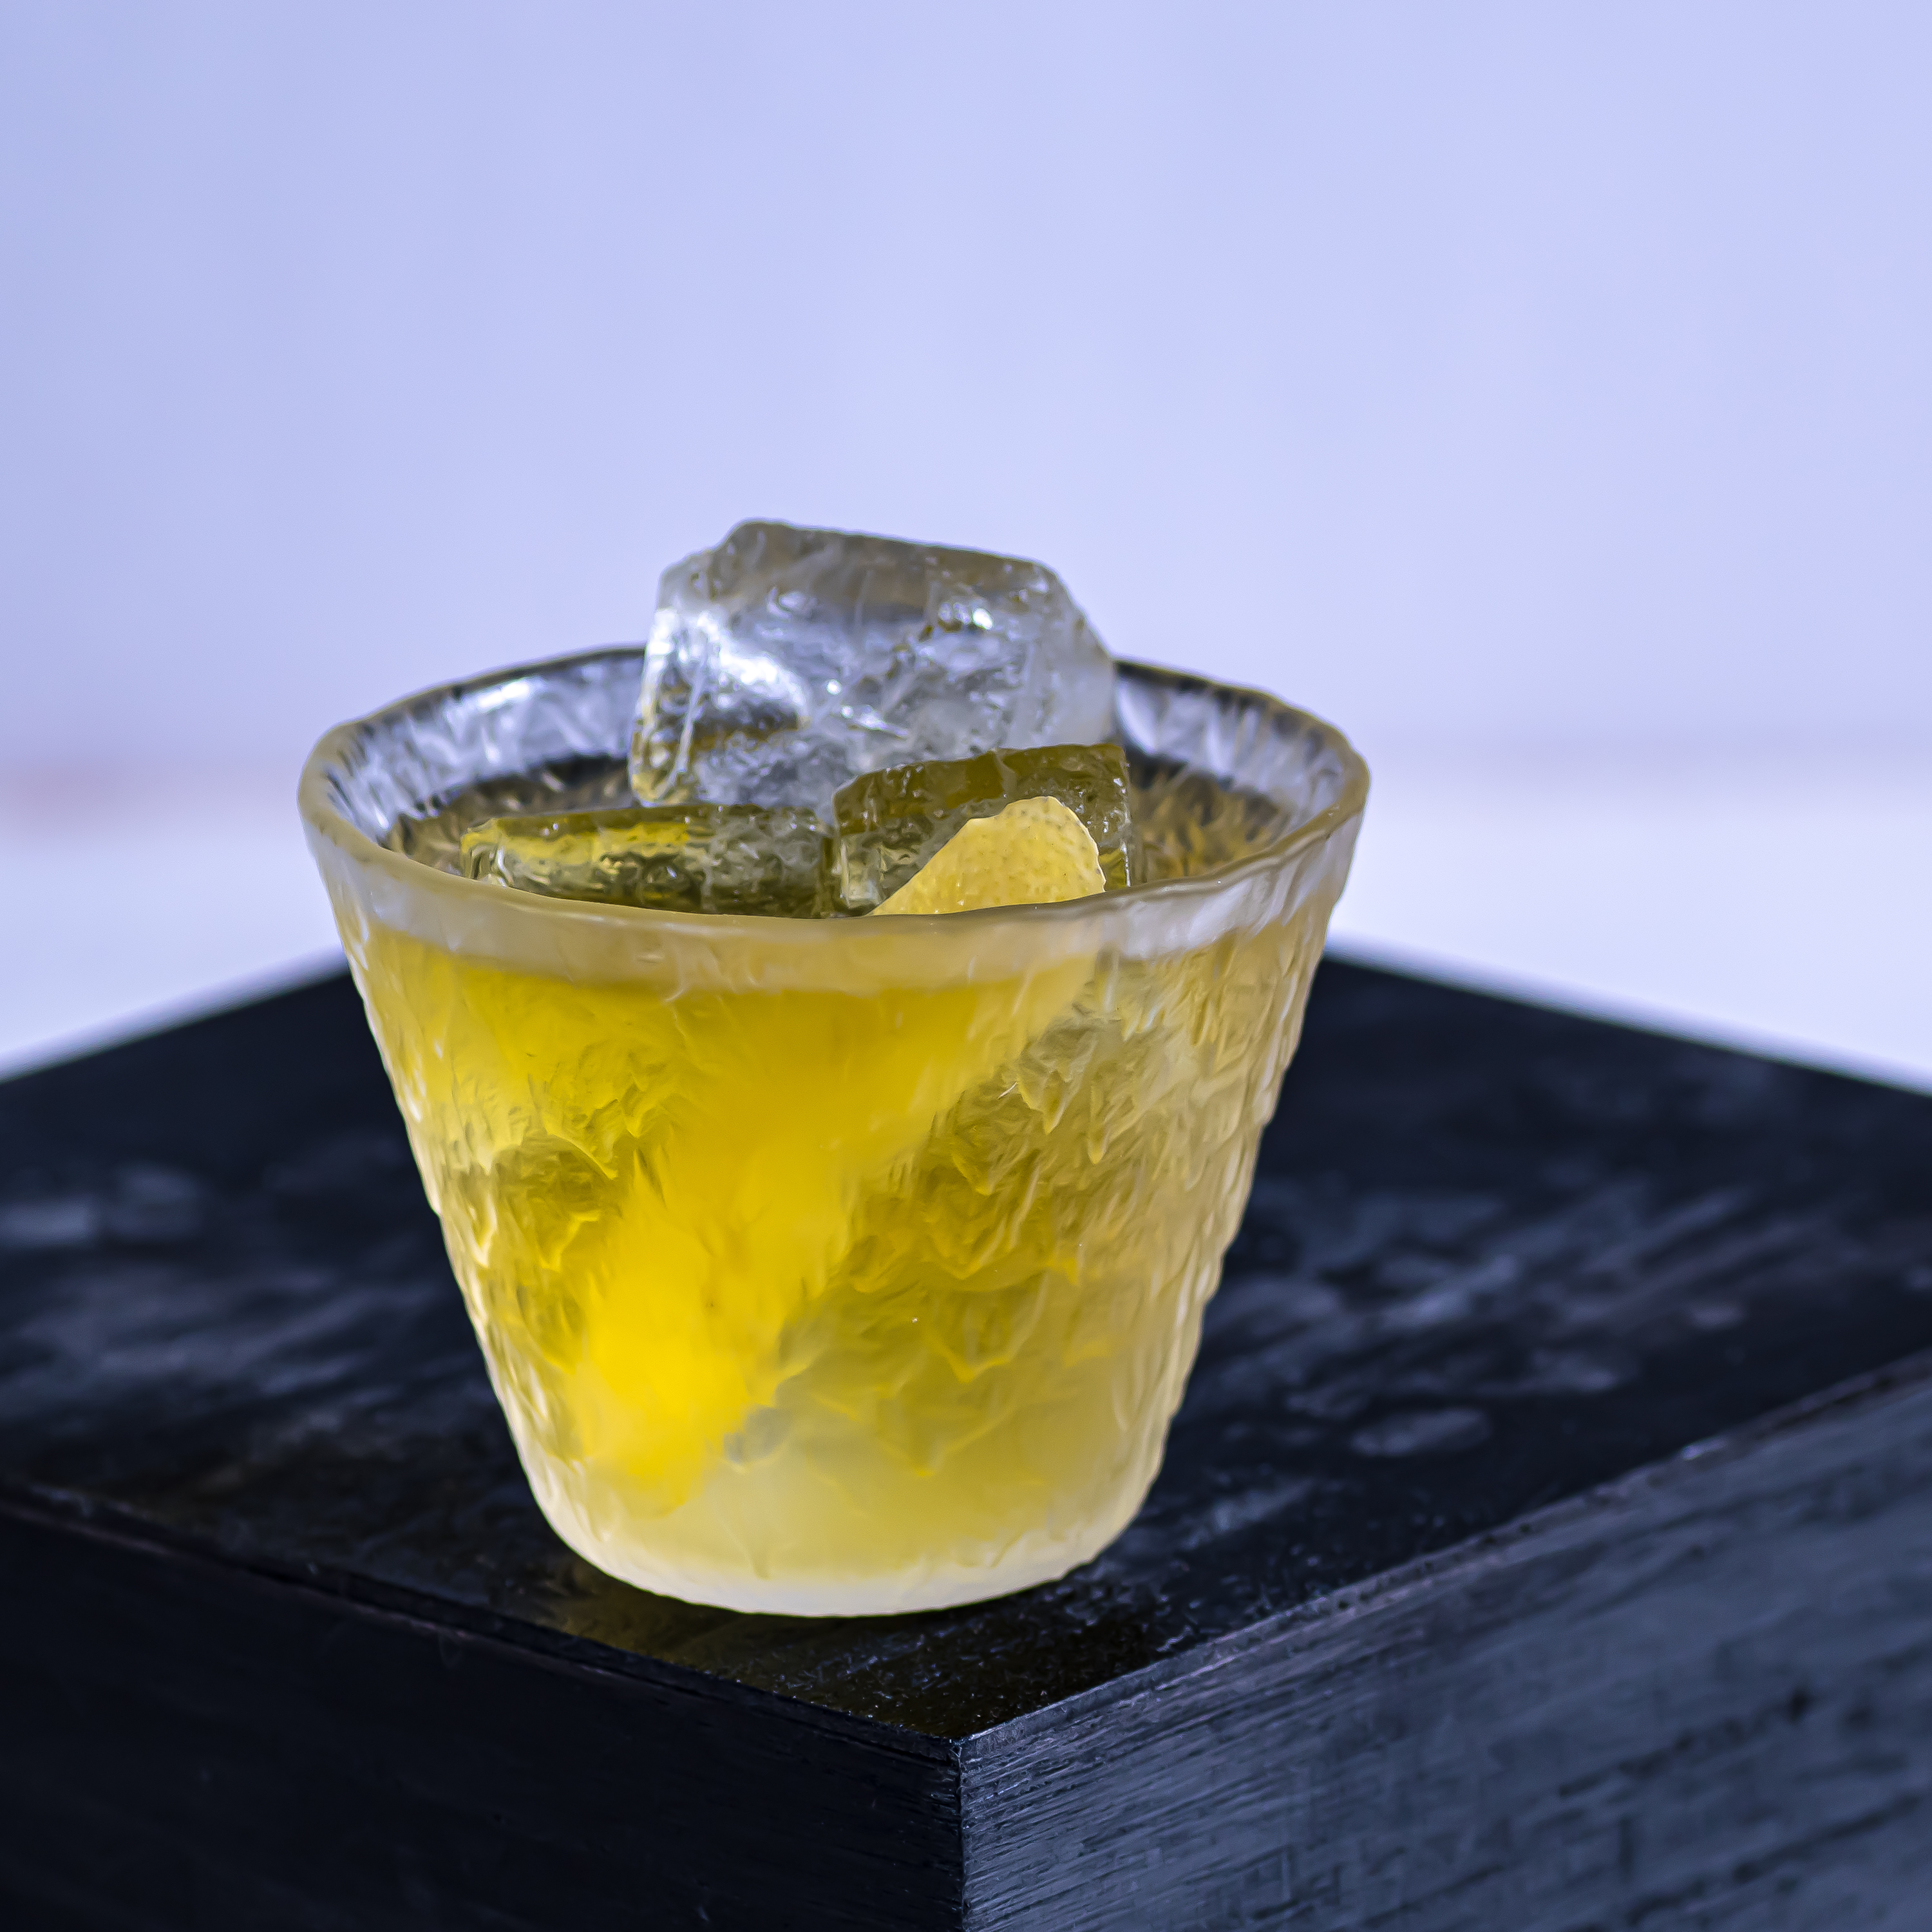 Der Dreadlock Holiday Cocktail besteht aus Jamaica Rum, Suze, weißem Wermut und Ananaslikör.